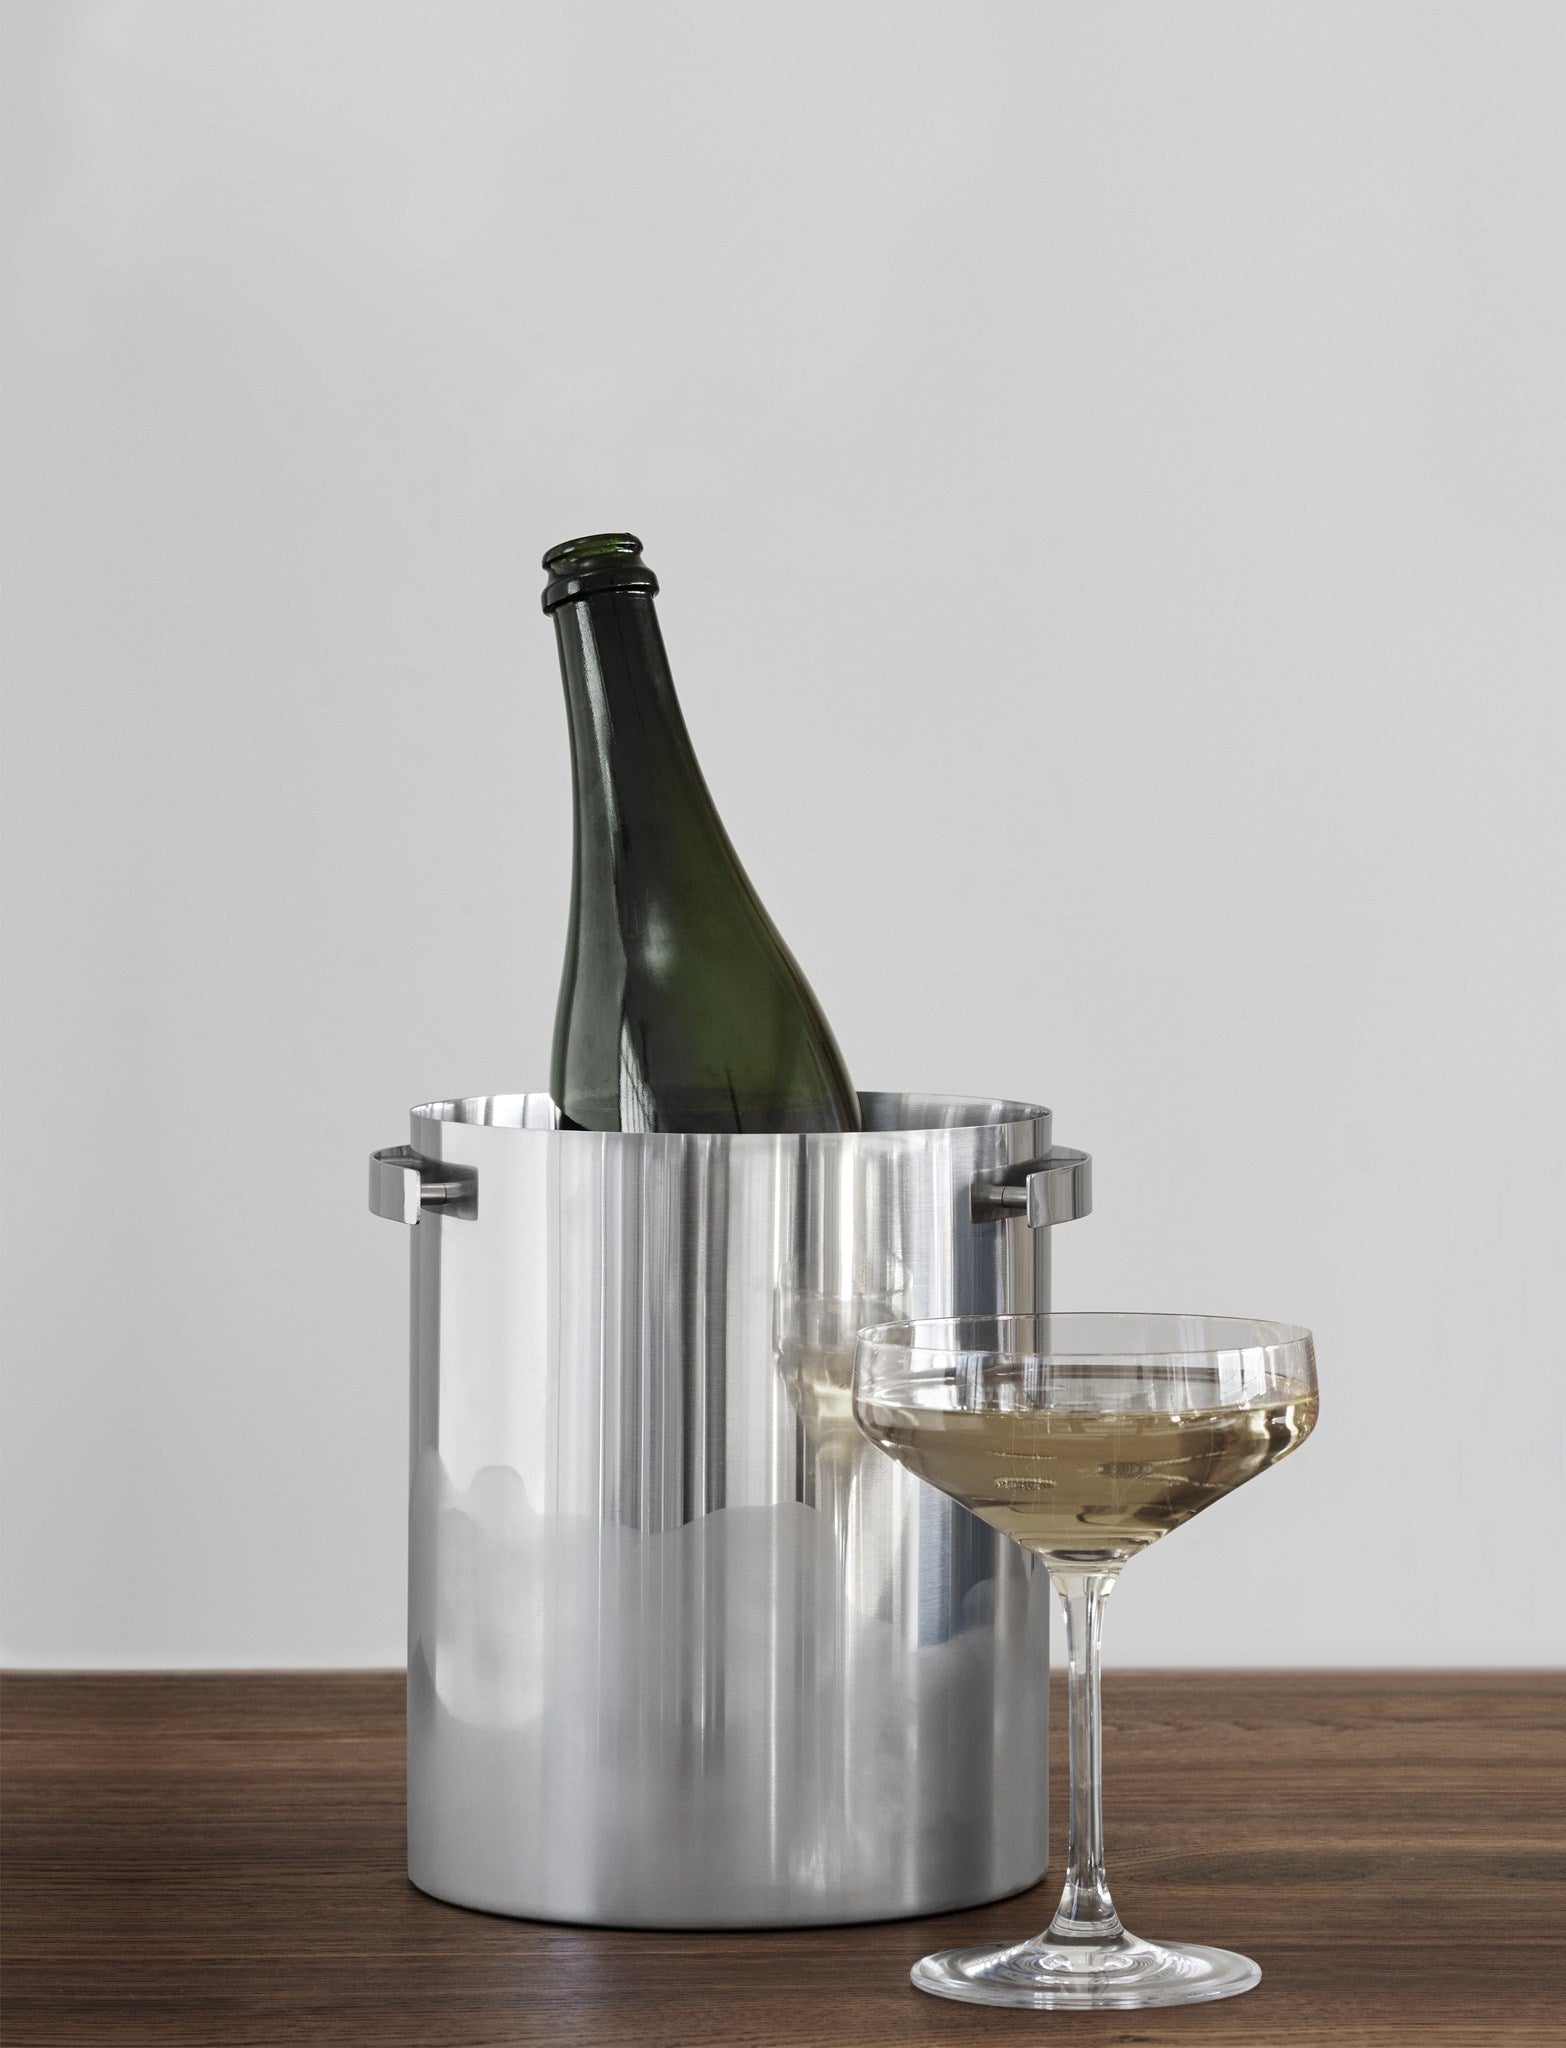 Stelton Arne Jacobsen Champagne køligere